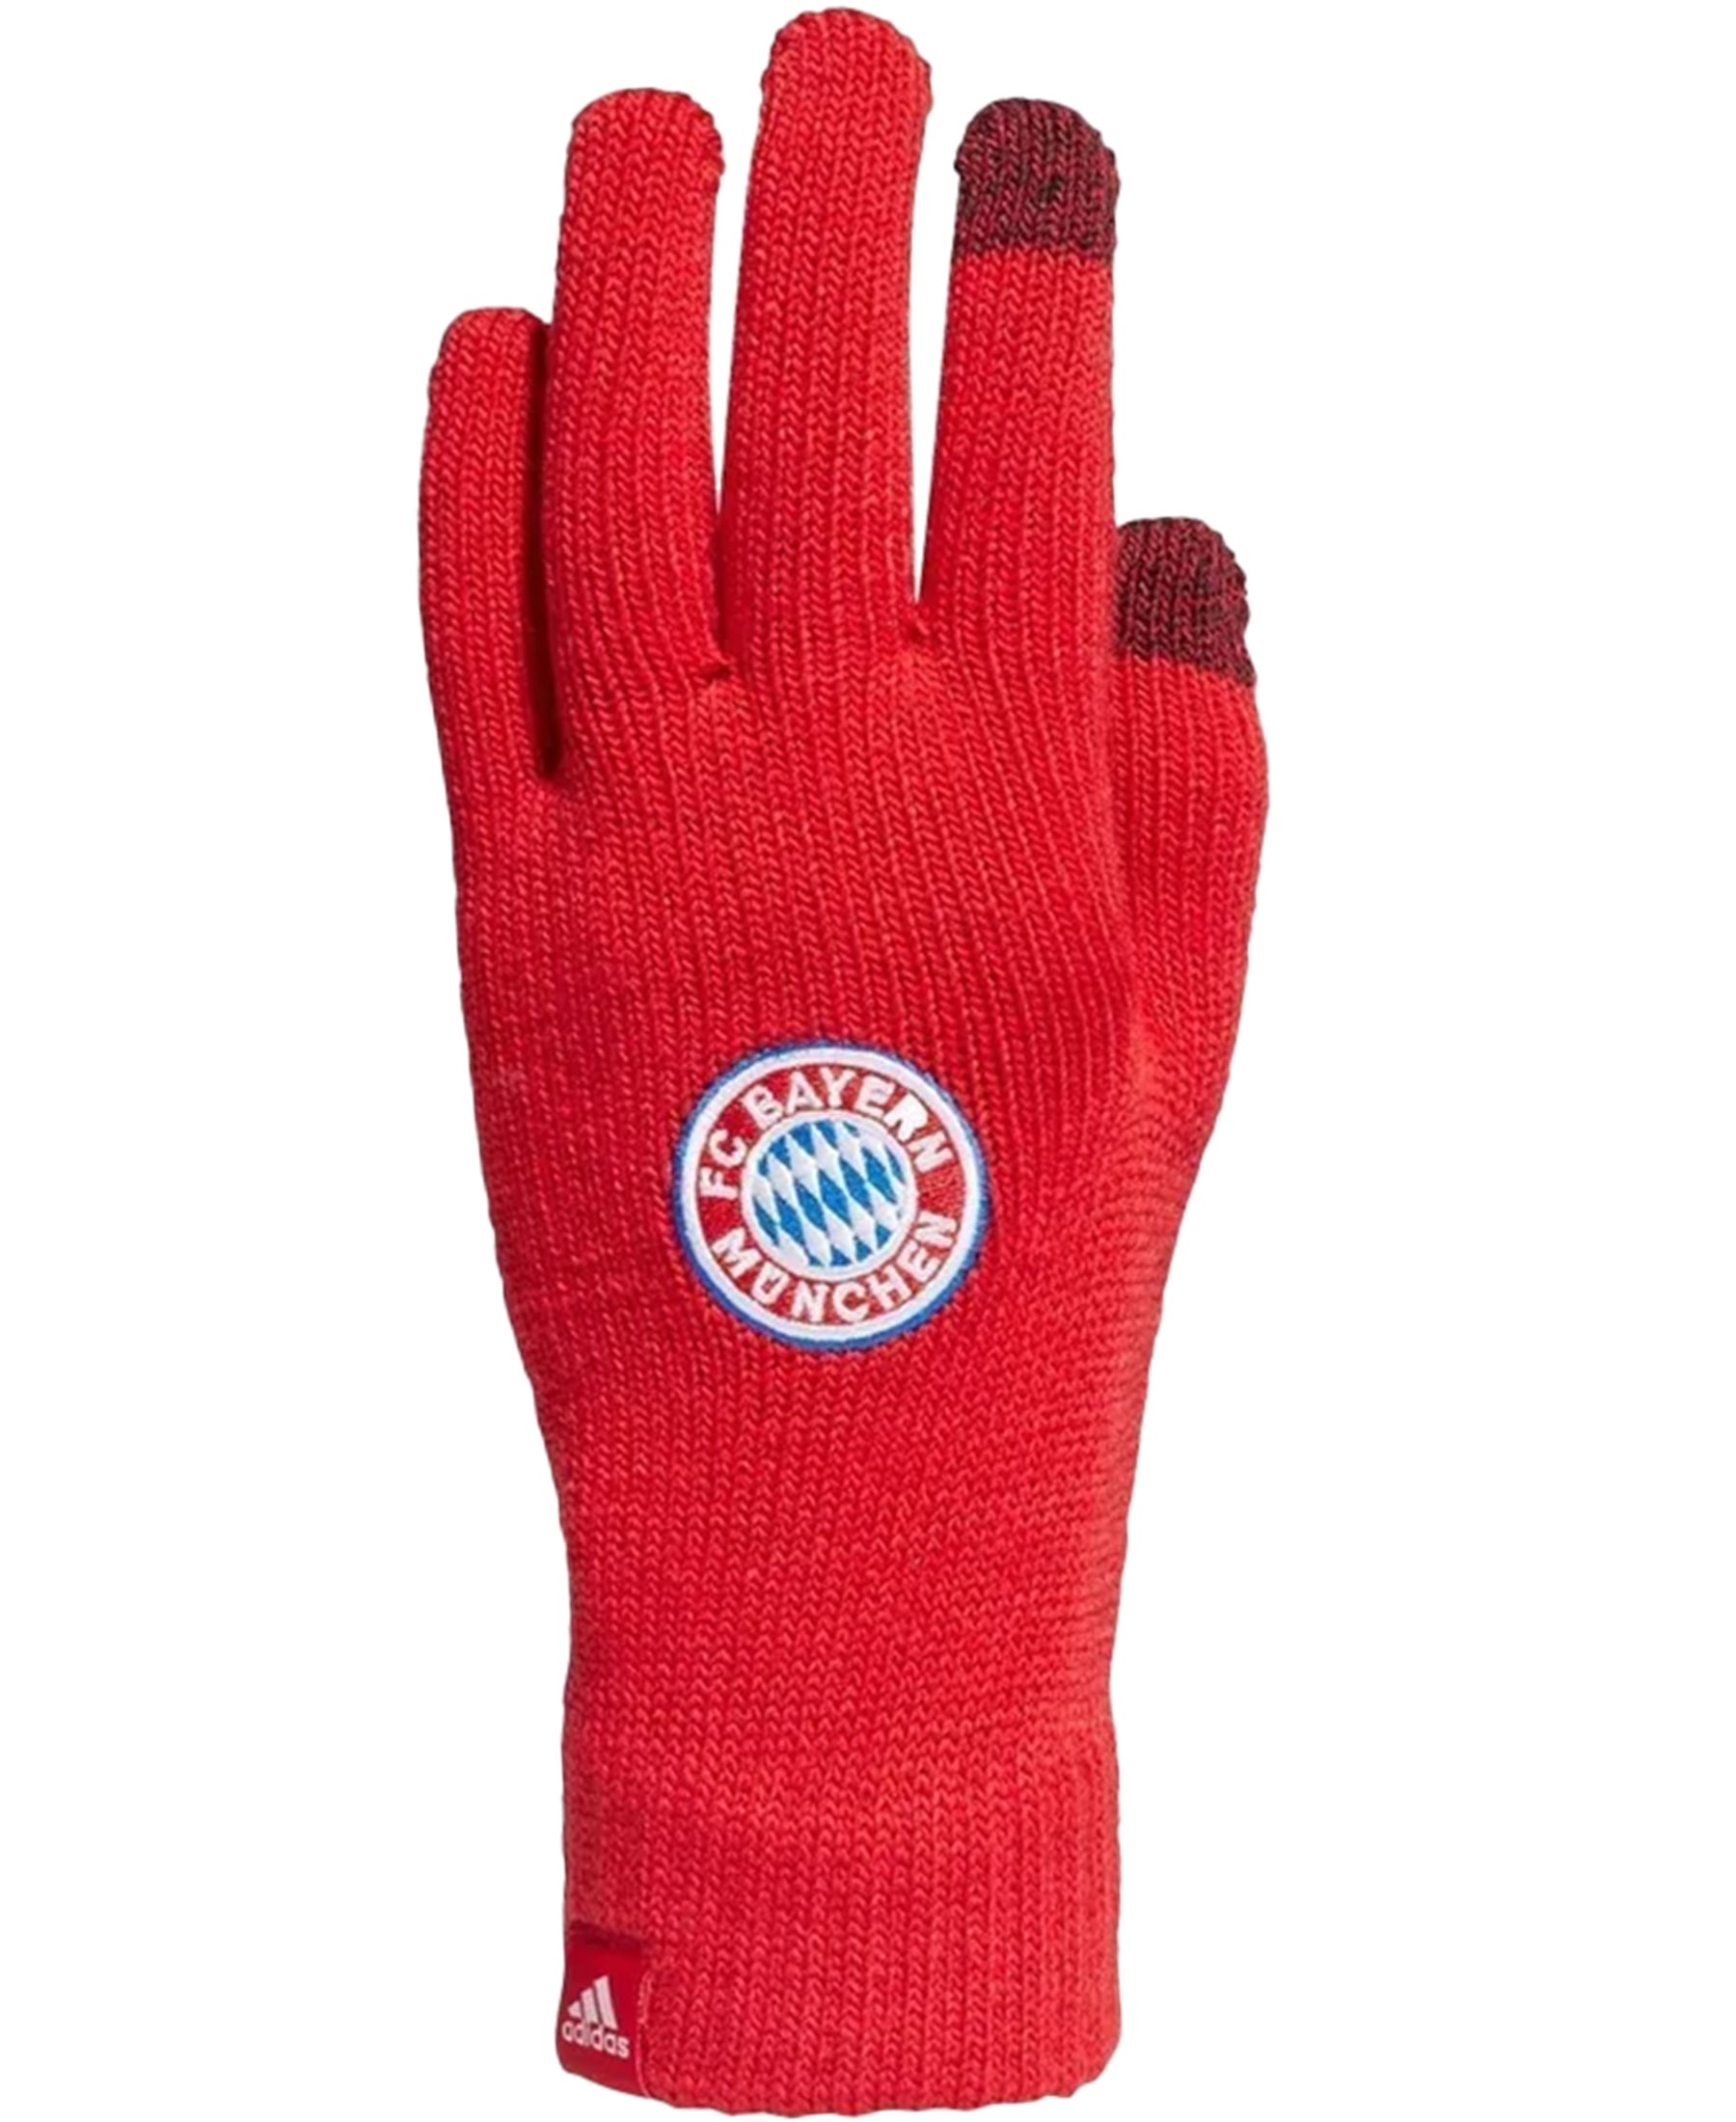 Die adidas FC Bayern München Strickhandschuhe (Artikelnummer GU0051) sind die perfekte Wahl, um Ihre Hände warm und gemütlich zu halten, während Sie Ihr Team unterstützen. Diese offiziellen FC Bayern München Handschuhe sind mit dem Vereinslogo und den Farben verziert und zeigen Ihre Leidenschaft für den Club. Hergestellt aus hochwertigem Material bieten sie Wärme und Komfort. Ideal für kalte Spieltage im Stadion oder beim Sport im Freien. Holen Sie sich diese Handschuhe jetzt bei SHOP4TEAMSPORT.